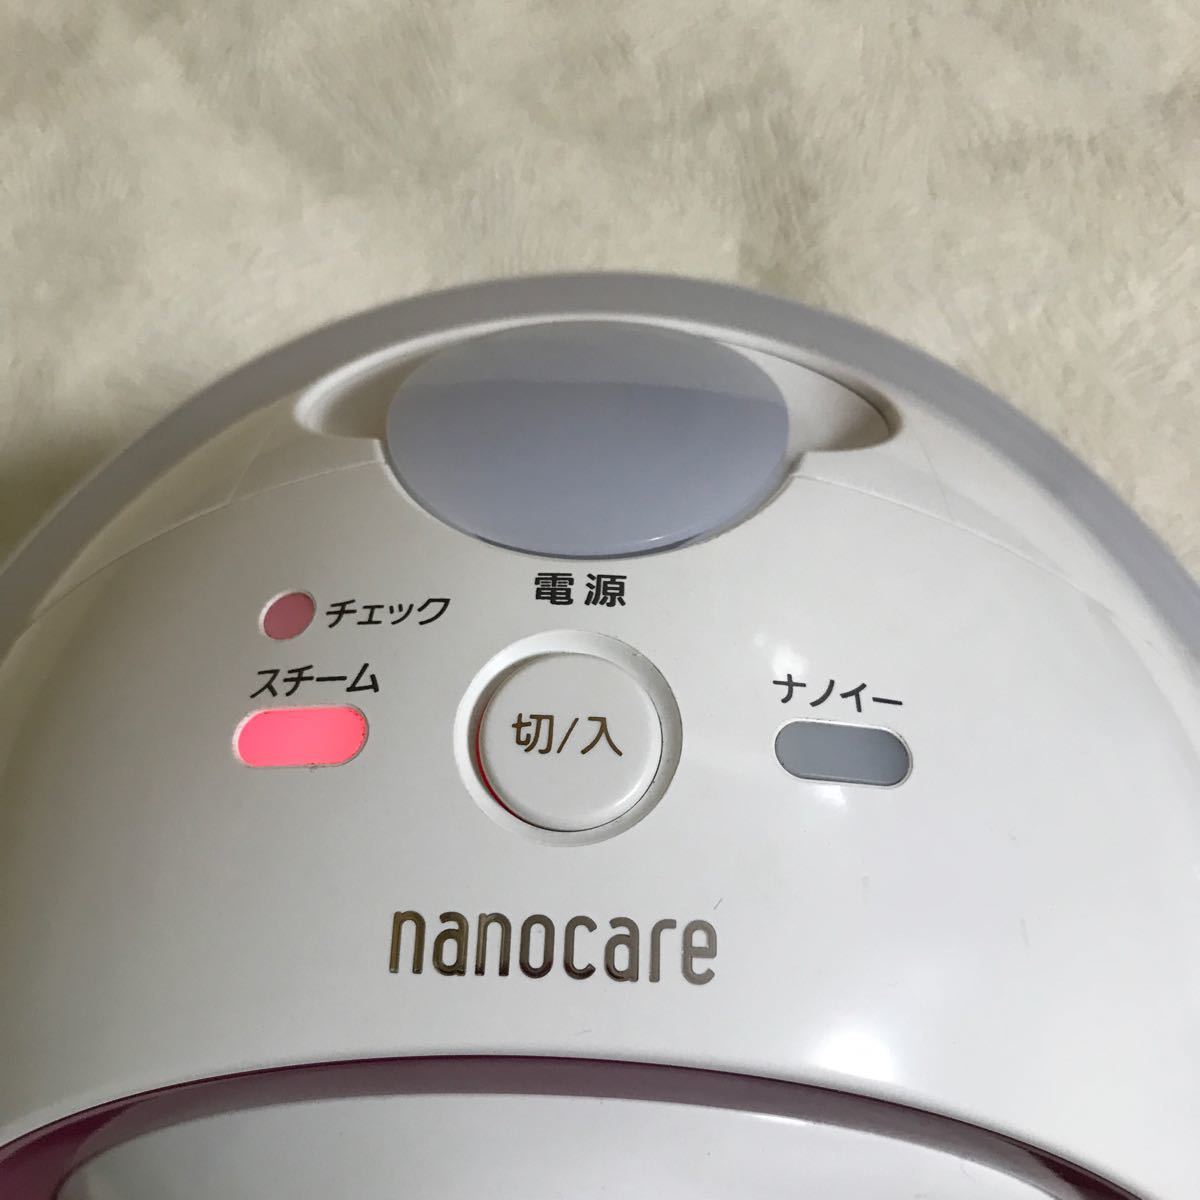 ナイトスチーマー ナノケア パナソニック Panasonic ナノイー 美顔器 フェイスケア パナソニックナノケア ピンク